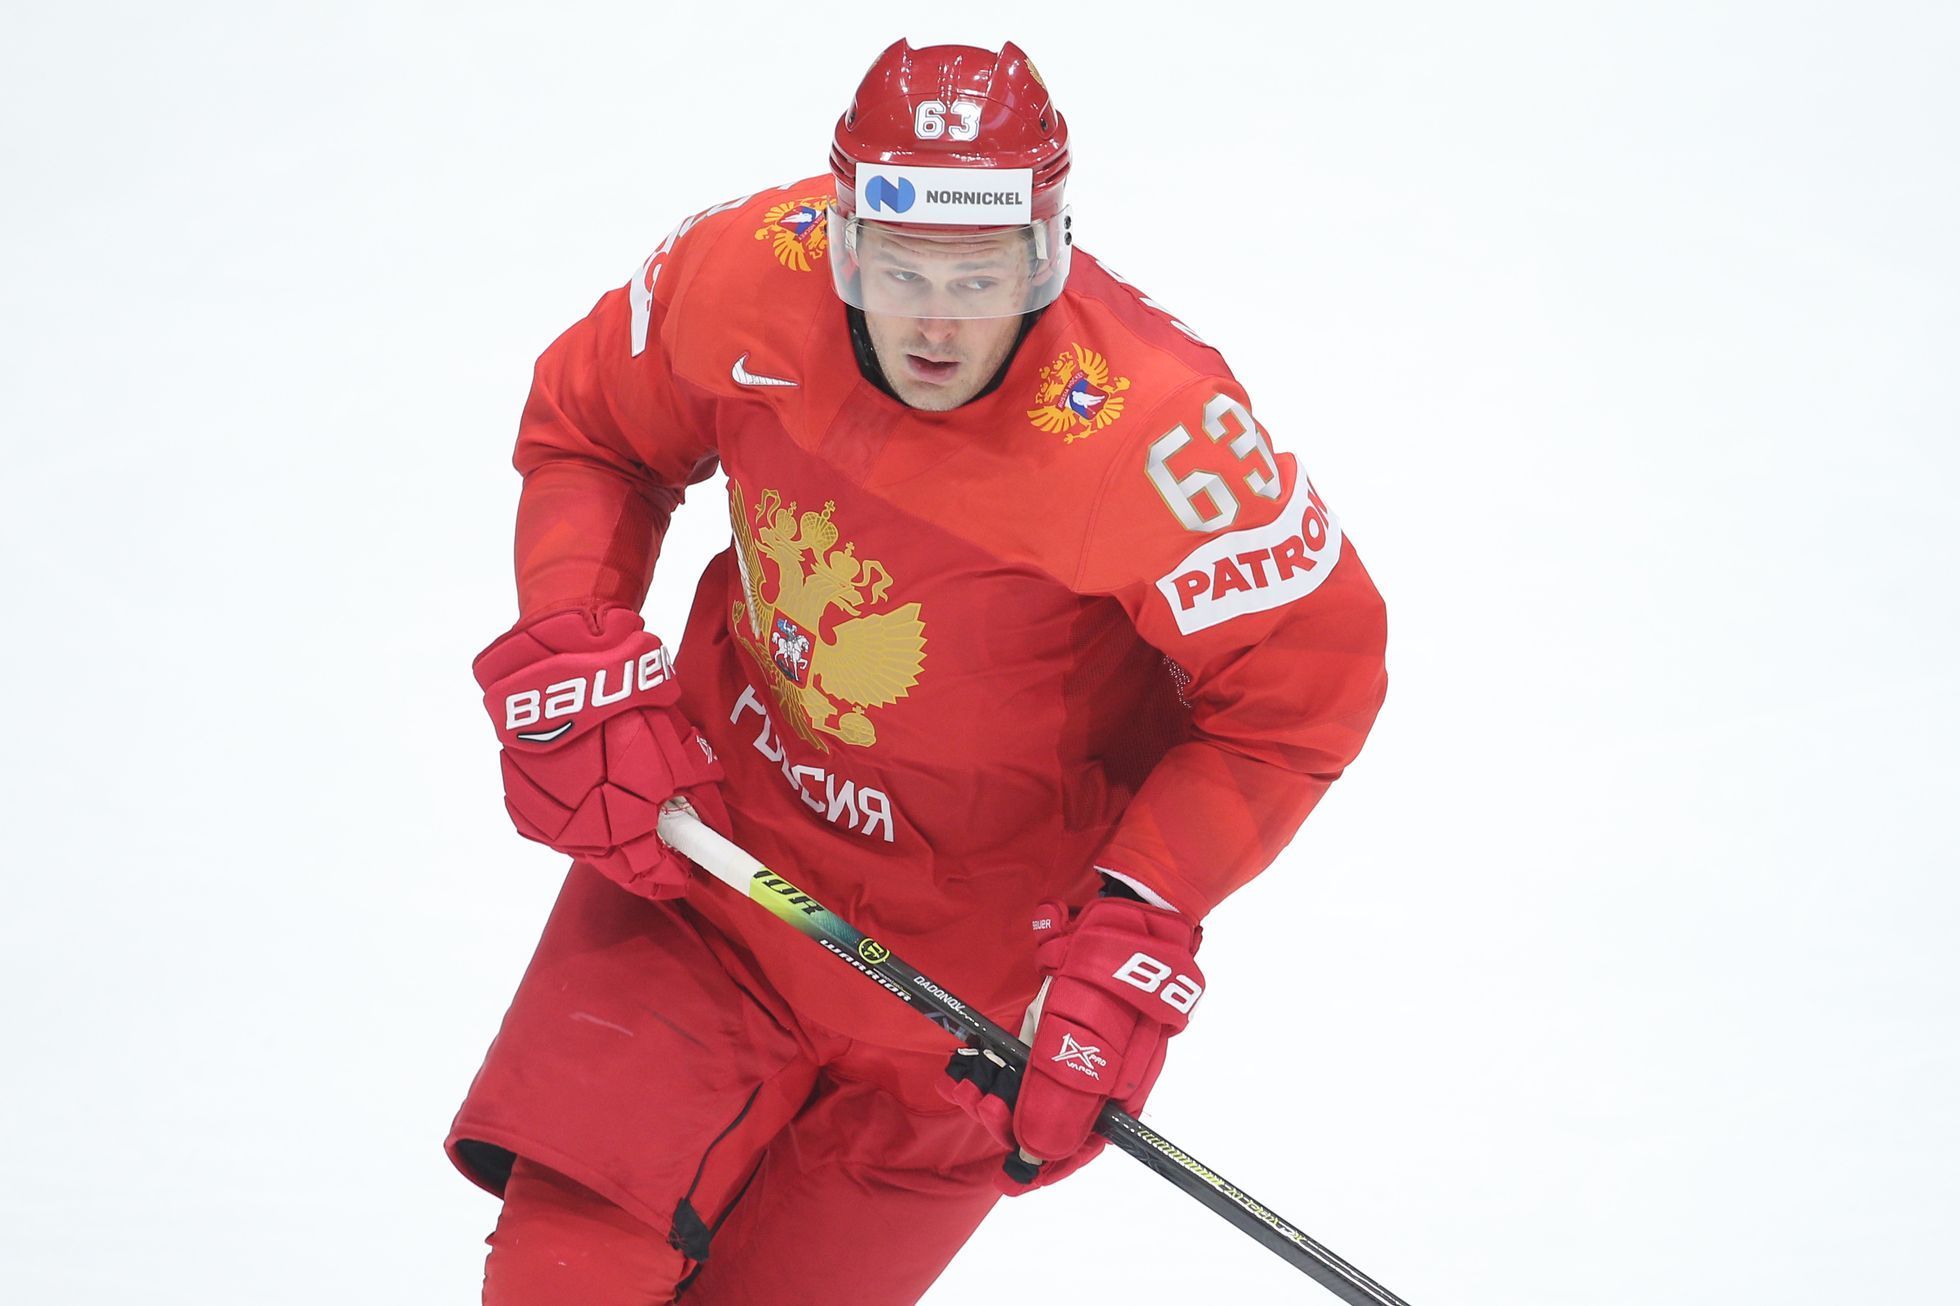 MS v hokeji 2019: Rusko - Norsko, Jevgenij Dadonov